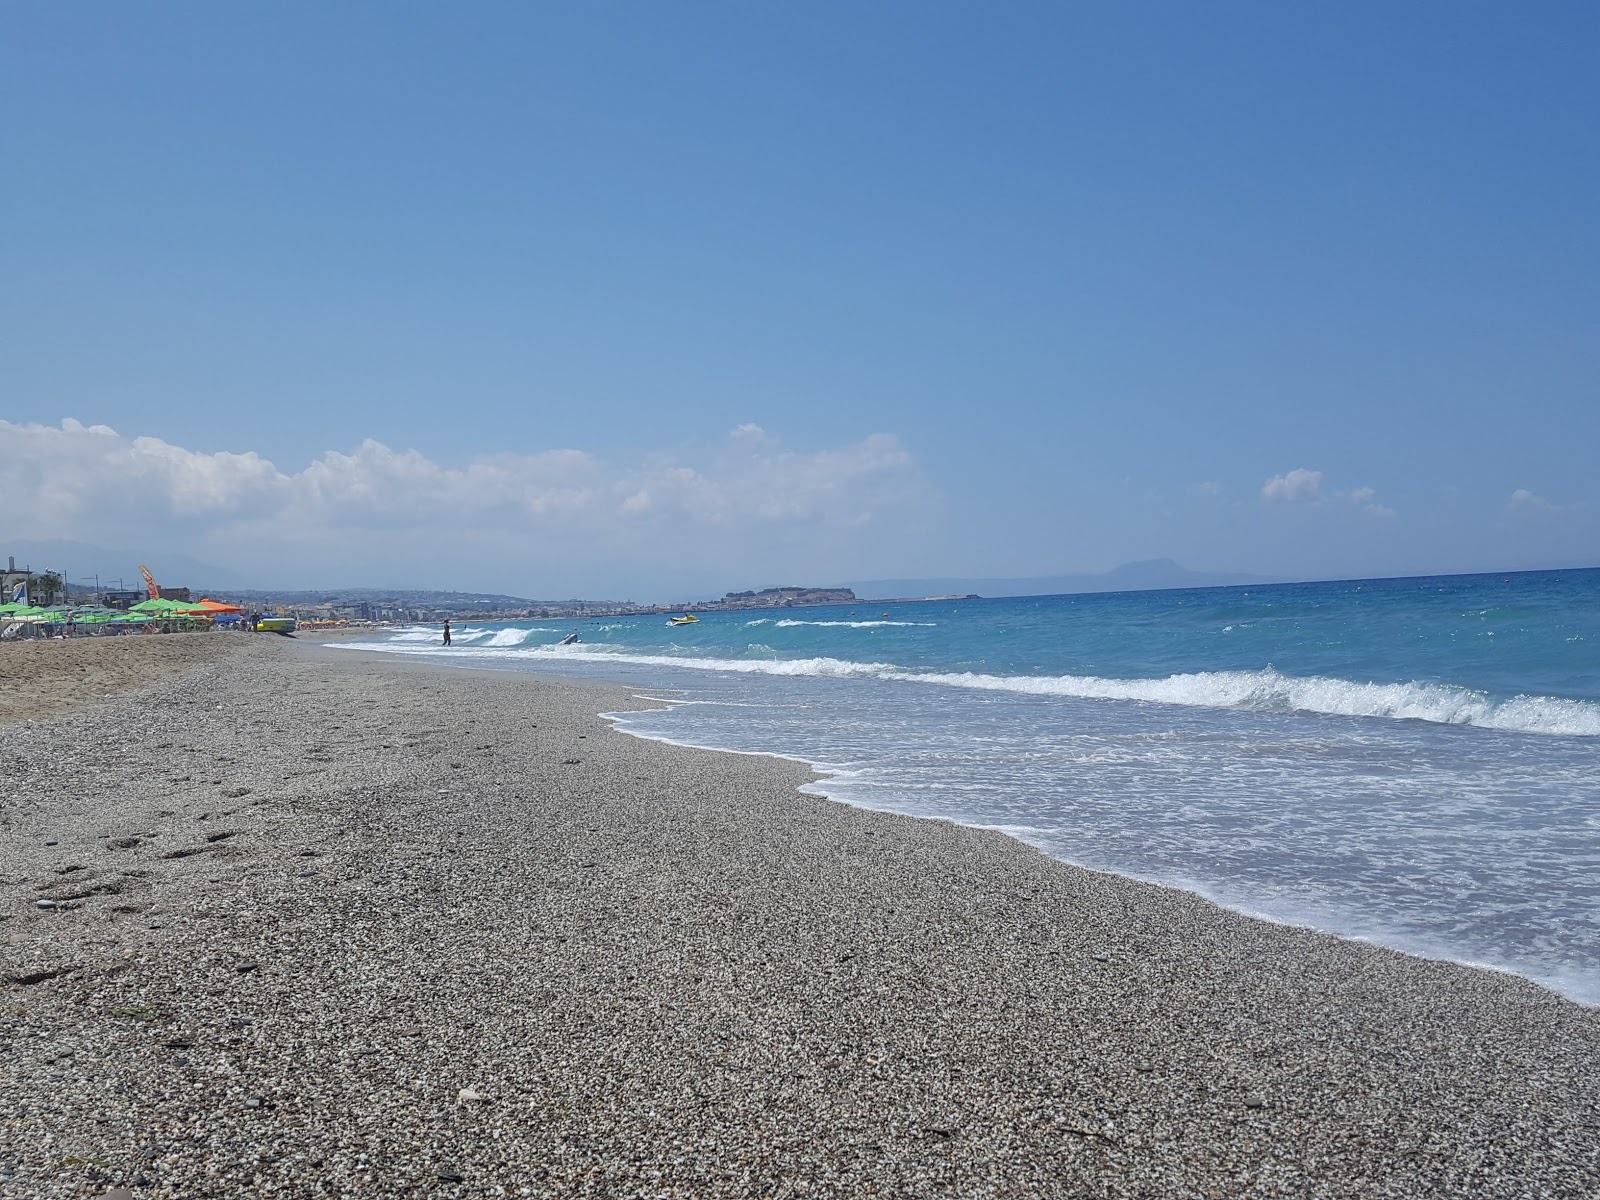 Foto af Pervolia beach II - populært sted blandt afslapningskendere